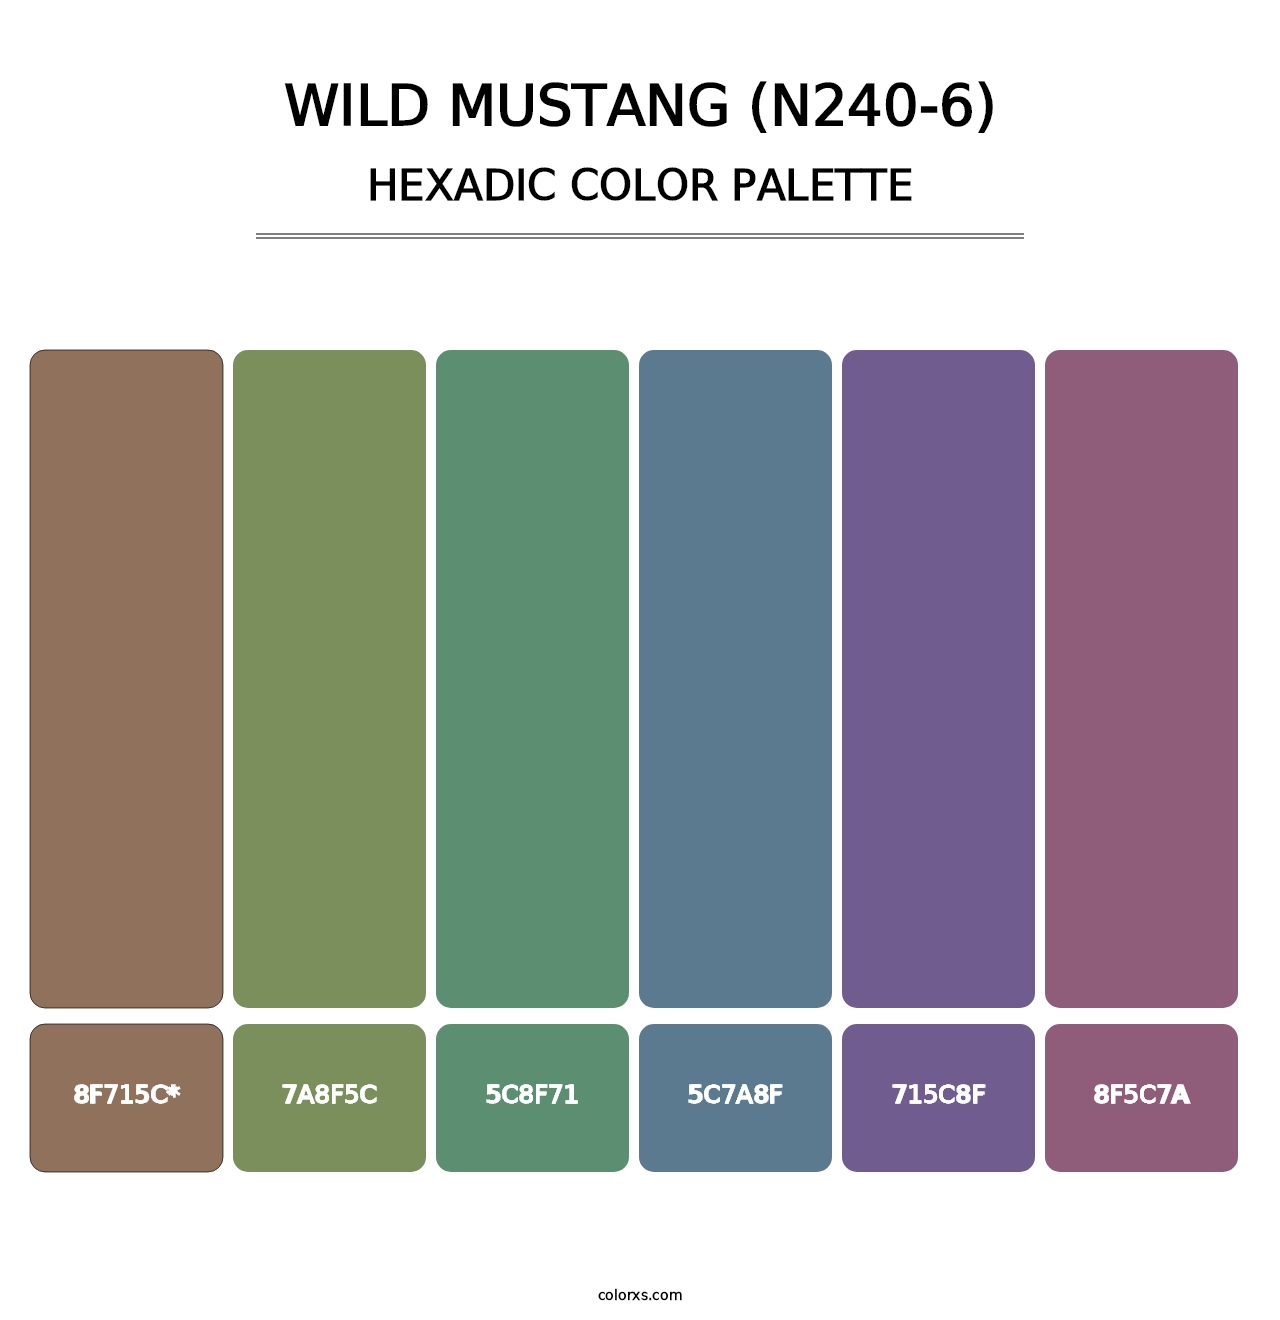 Wild Mustang (N240-6) - Hexadic Color Palette